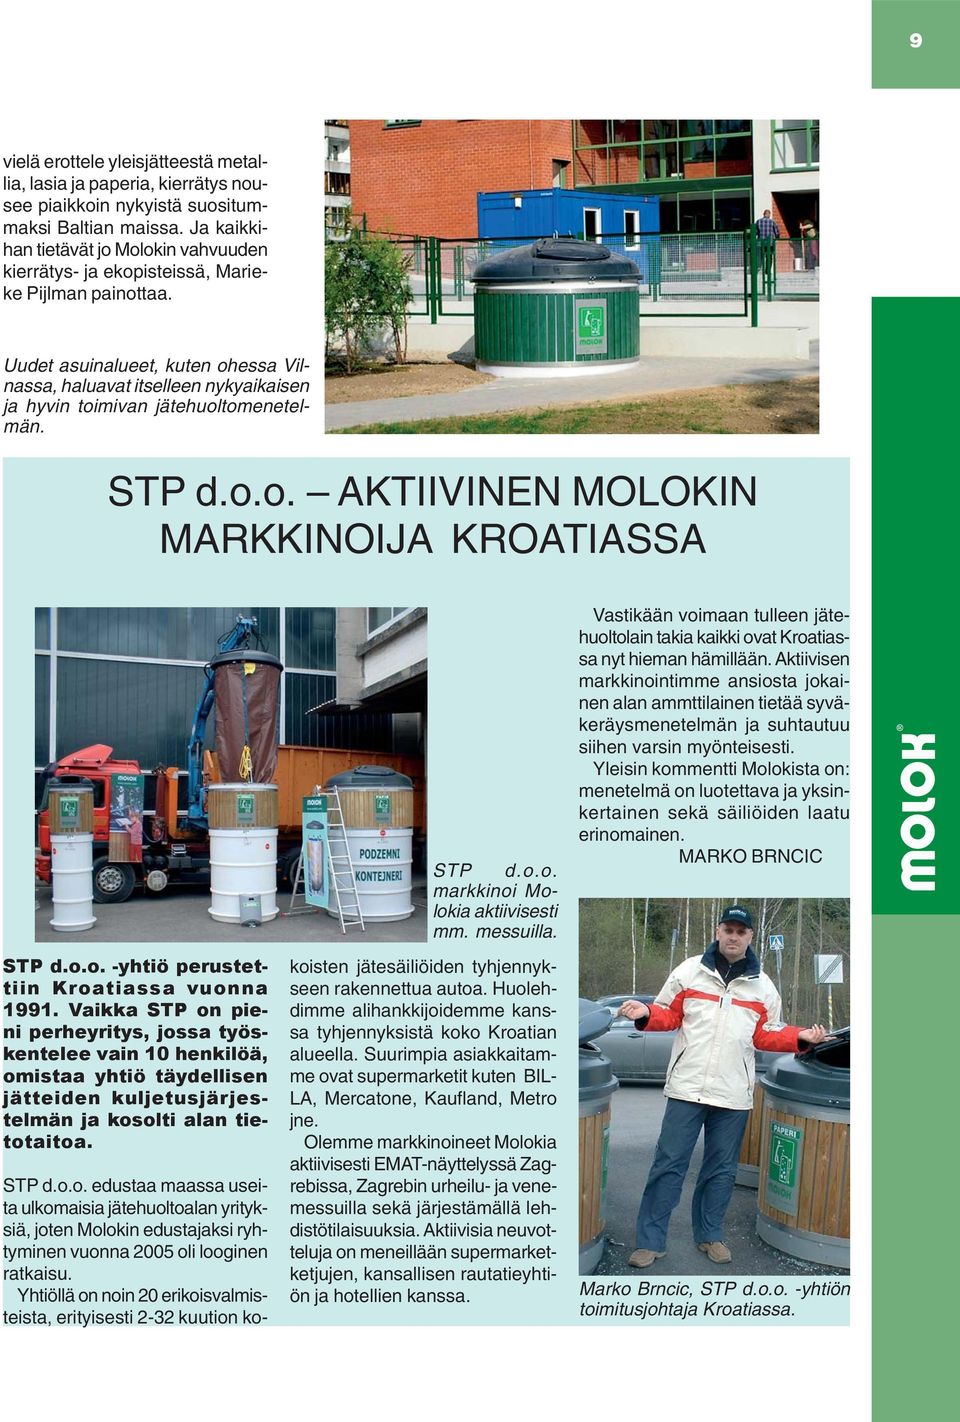 Uudet asuinalueet, kuten ohessa Vilnassa, haluavat itselleen nykyaikaisen ja hyvin toimivan jätehuoltomenetelmän. STP d.o.o. AKTIIVINEN MOLOKIN MARKKINOIJA KROATIASSA STP d.o.o. -yhtiö perustettiin Kroatiassa vuonna 1991.